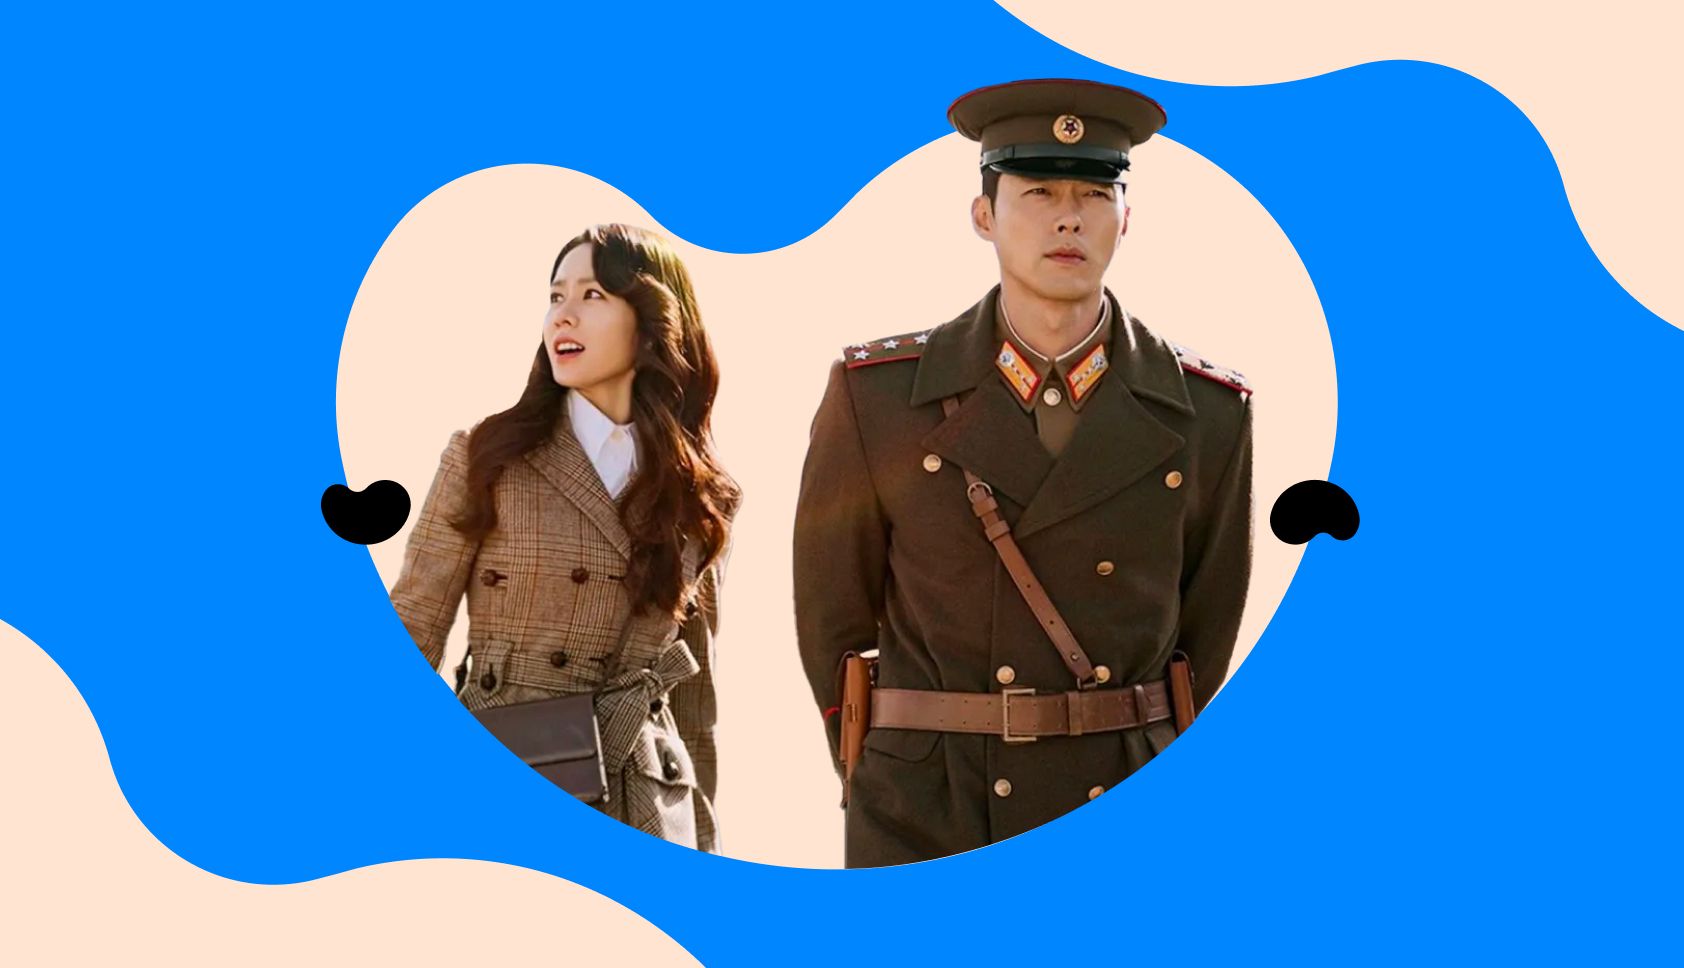 Pousando no Amor é produção coreana que fala de uma relação